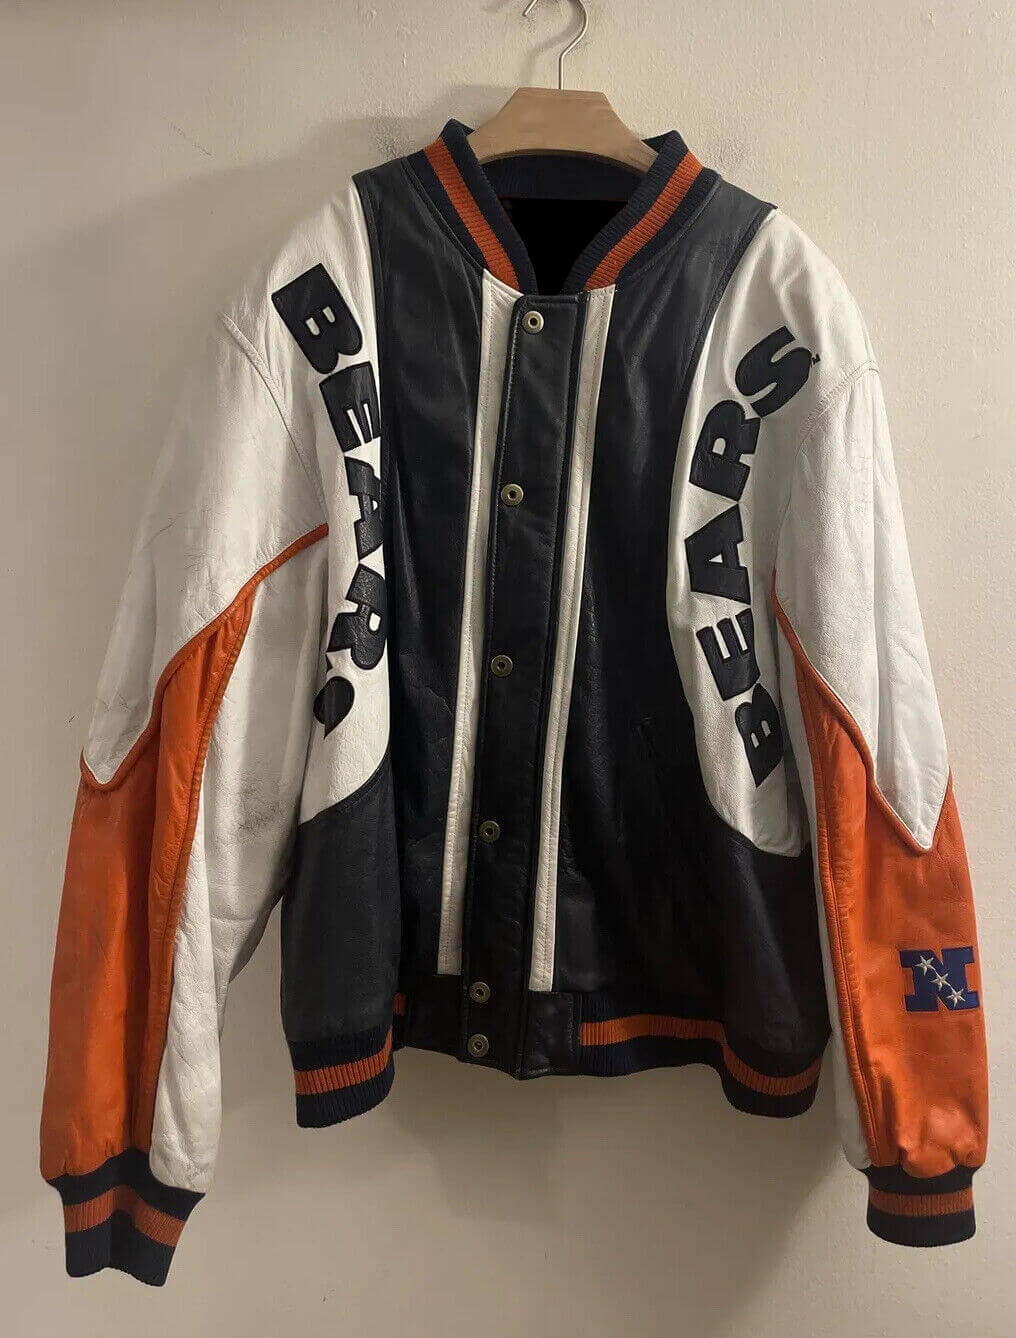 Vintage NFL Chicago Bears Leather Jacket - Maker of Jacket